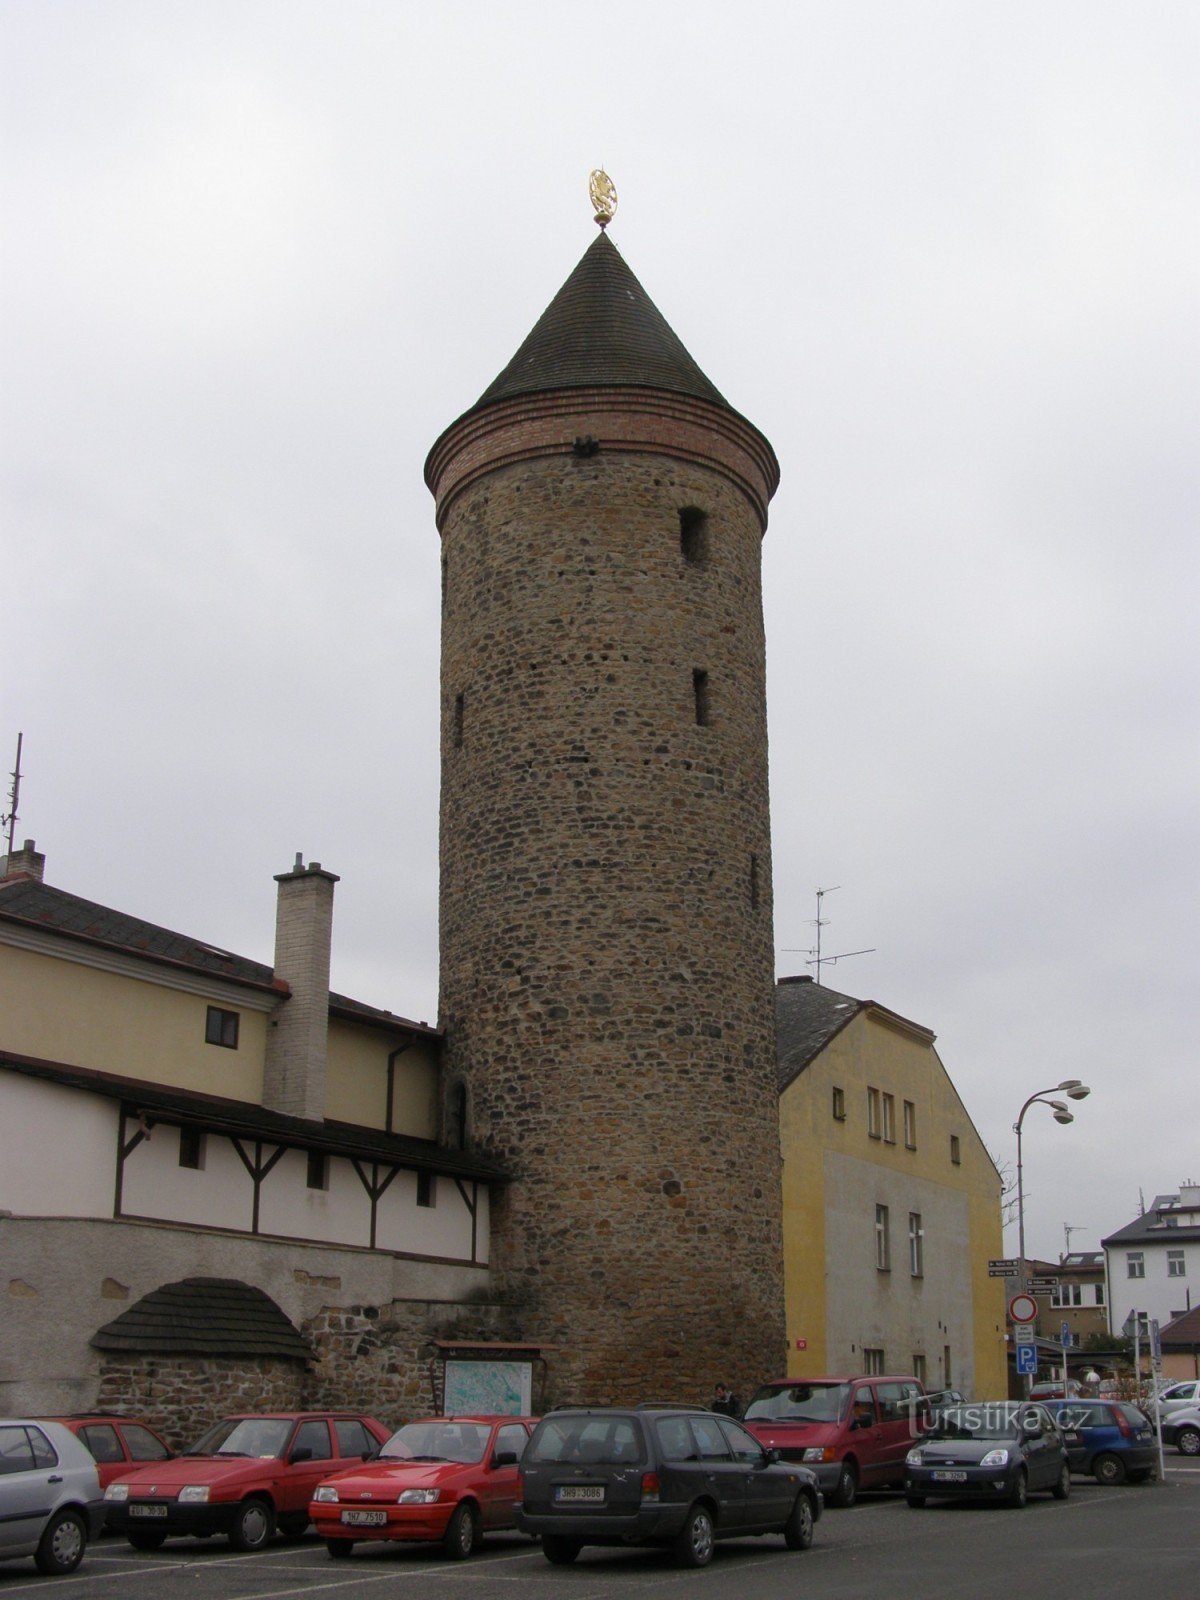 Dvur Králové - вежа Shindelářská